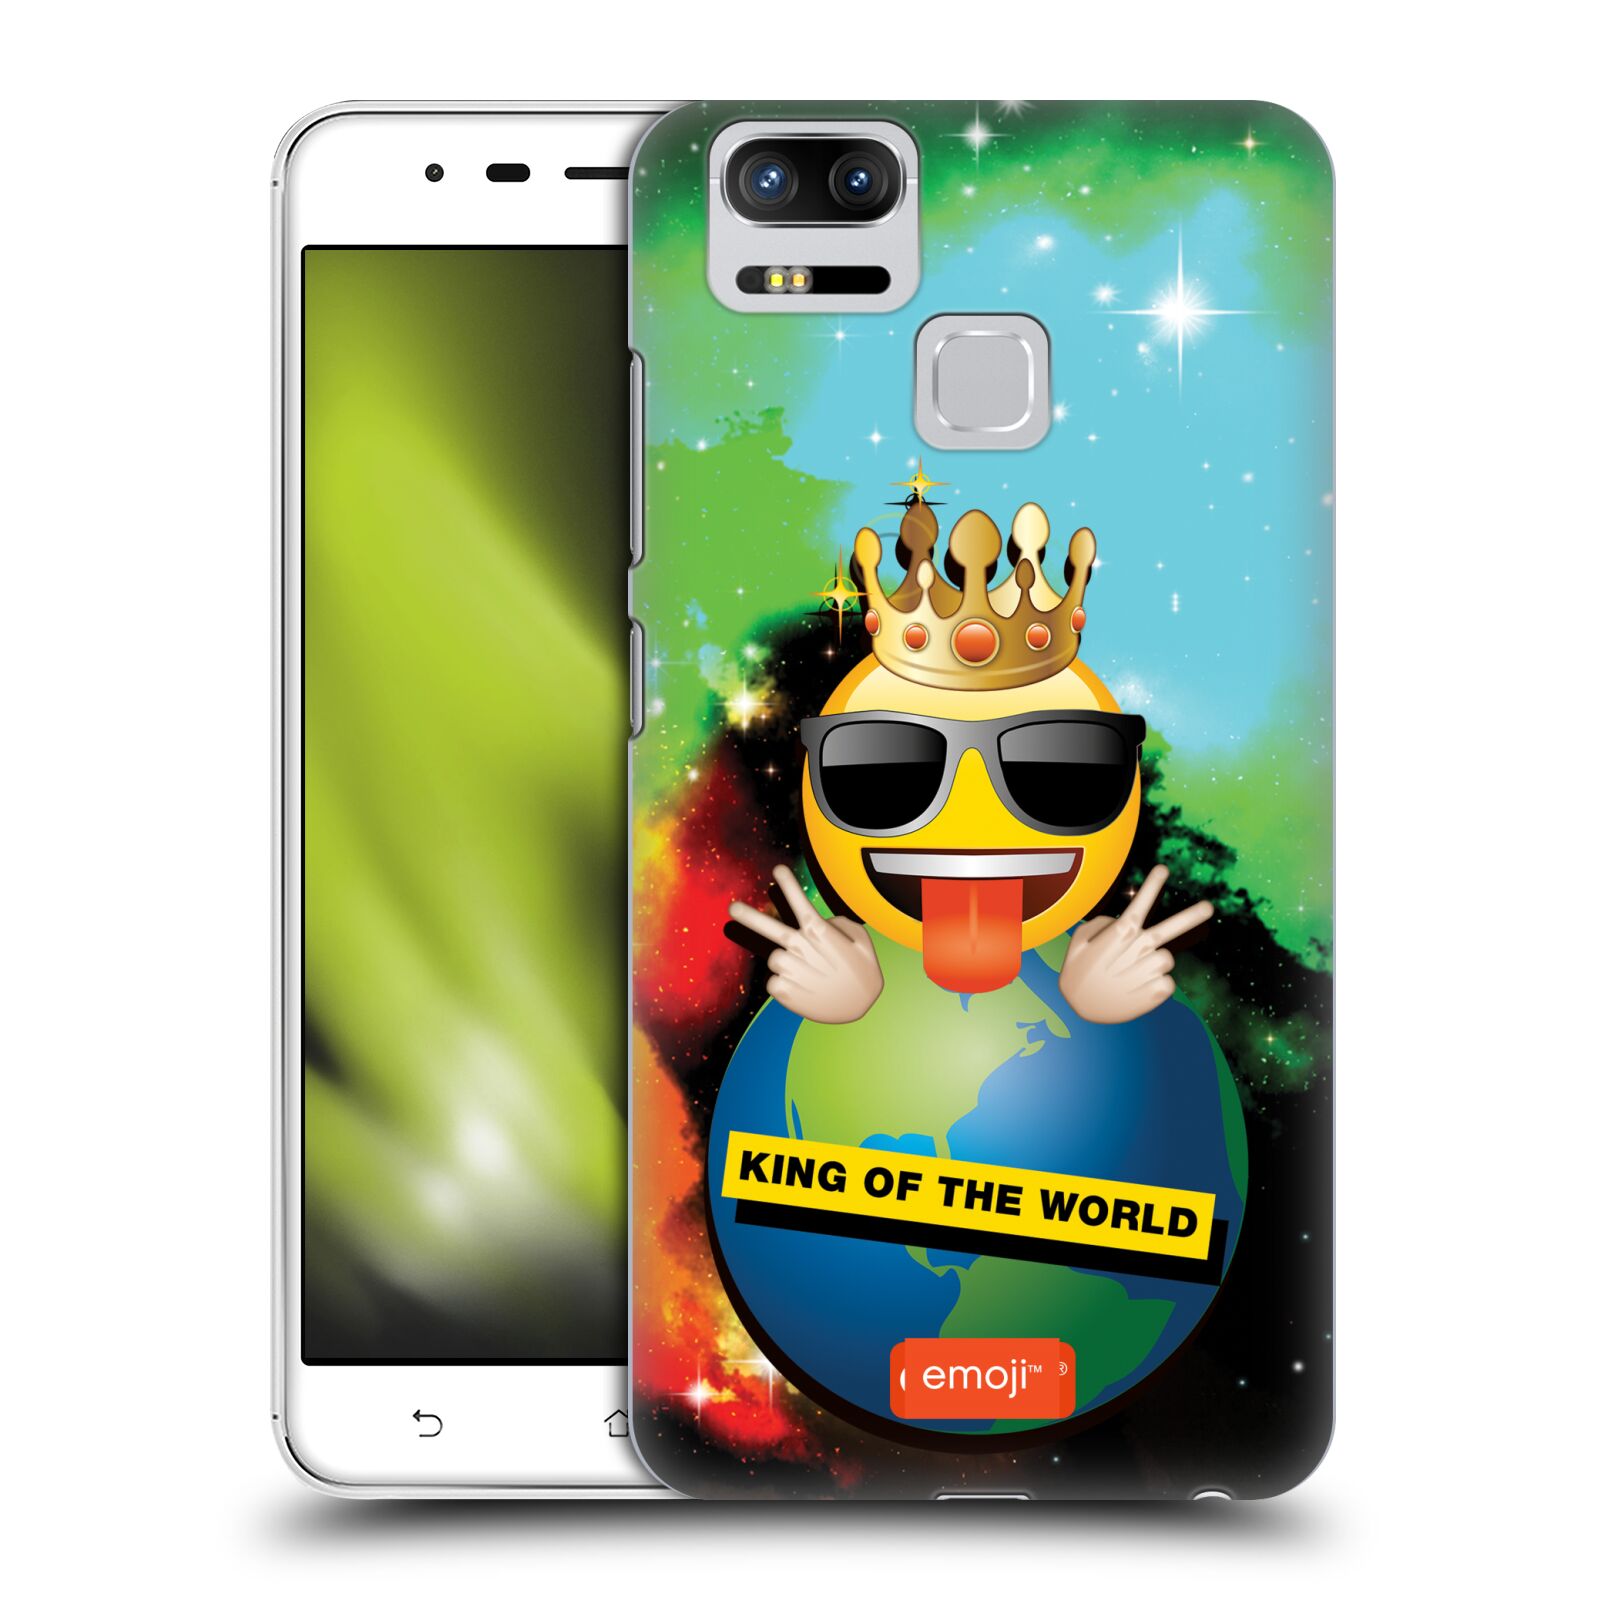 HEAD CASE plastový obal na mobil Asus Zenfone 3 Zoom ZE553KL smajlík oficiální kryt EMOJI velký smajlík král světa